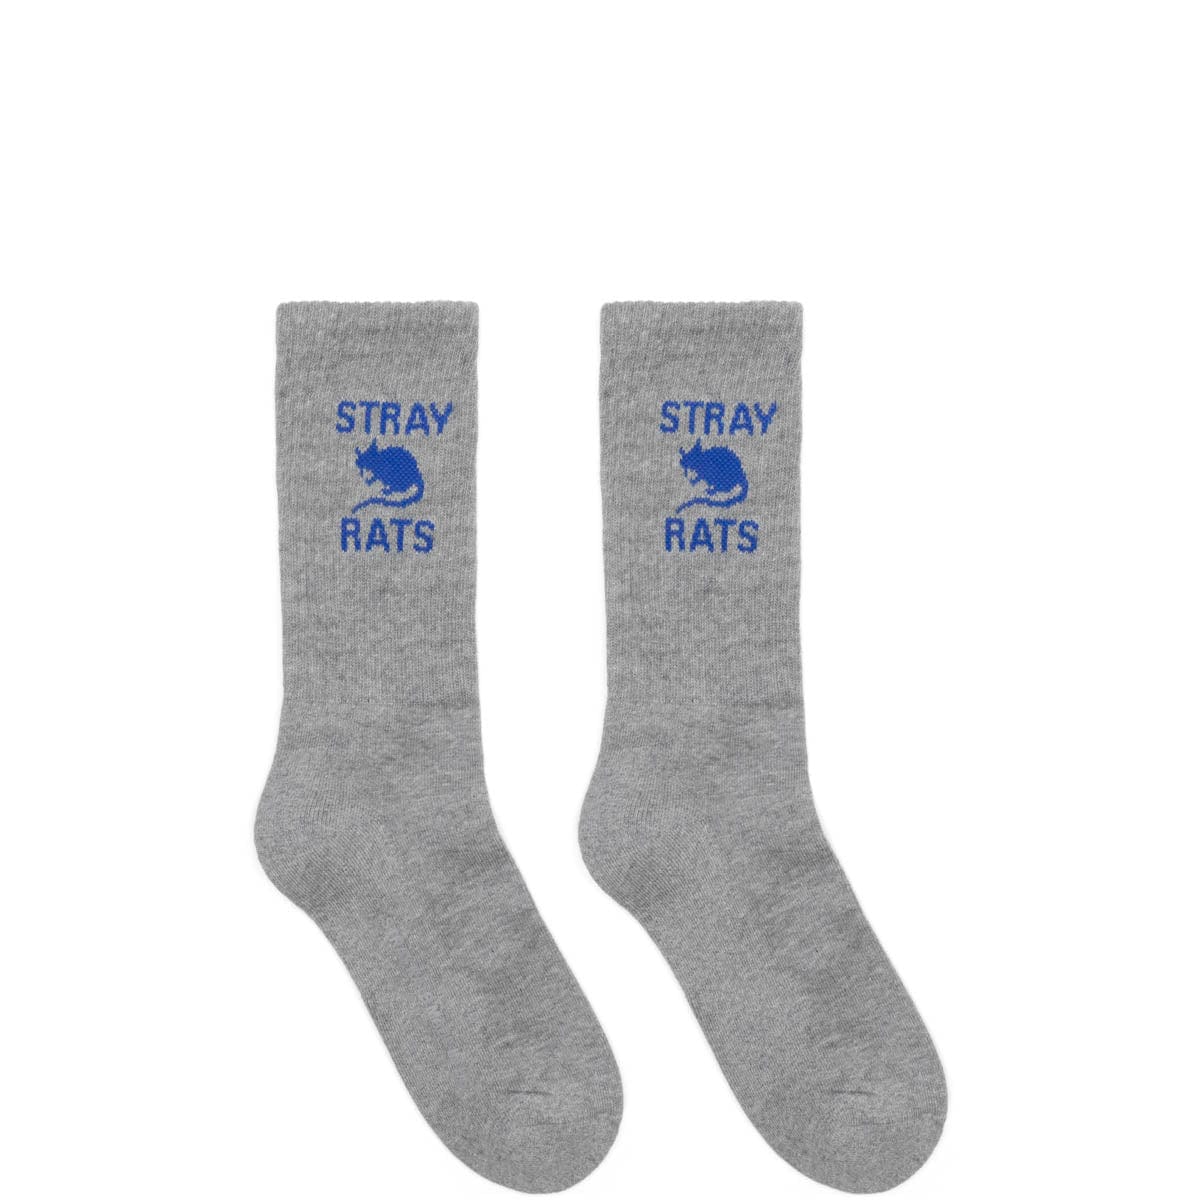 Stray Rats Socks HEATHER GREY / O/S RAT SOCKS